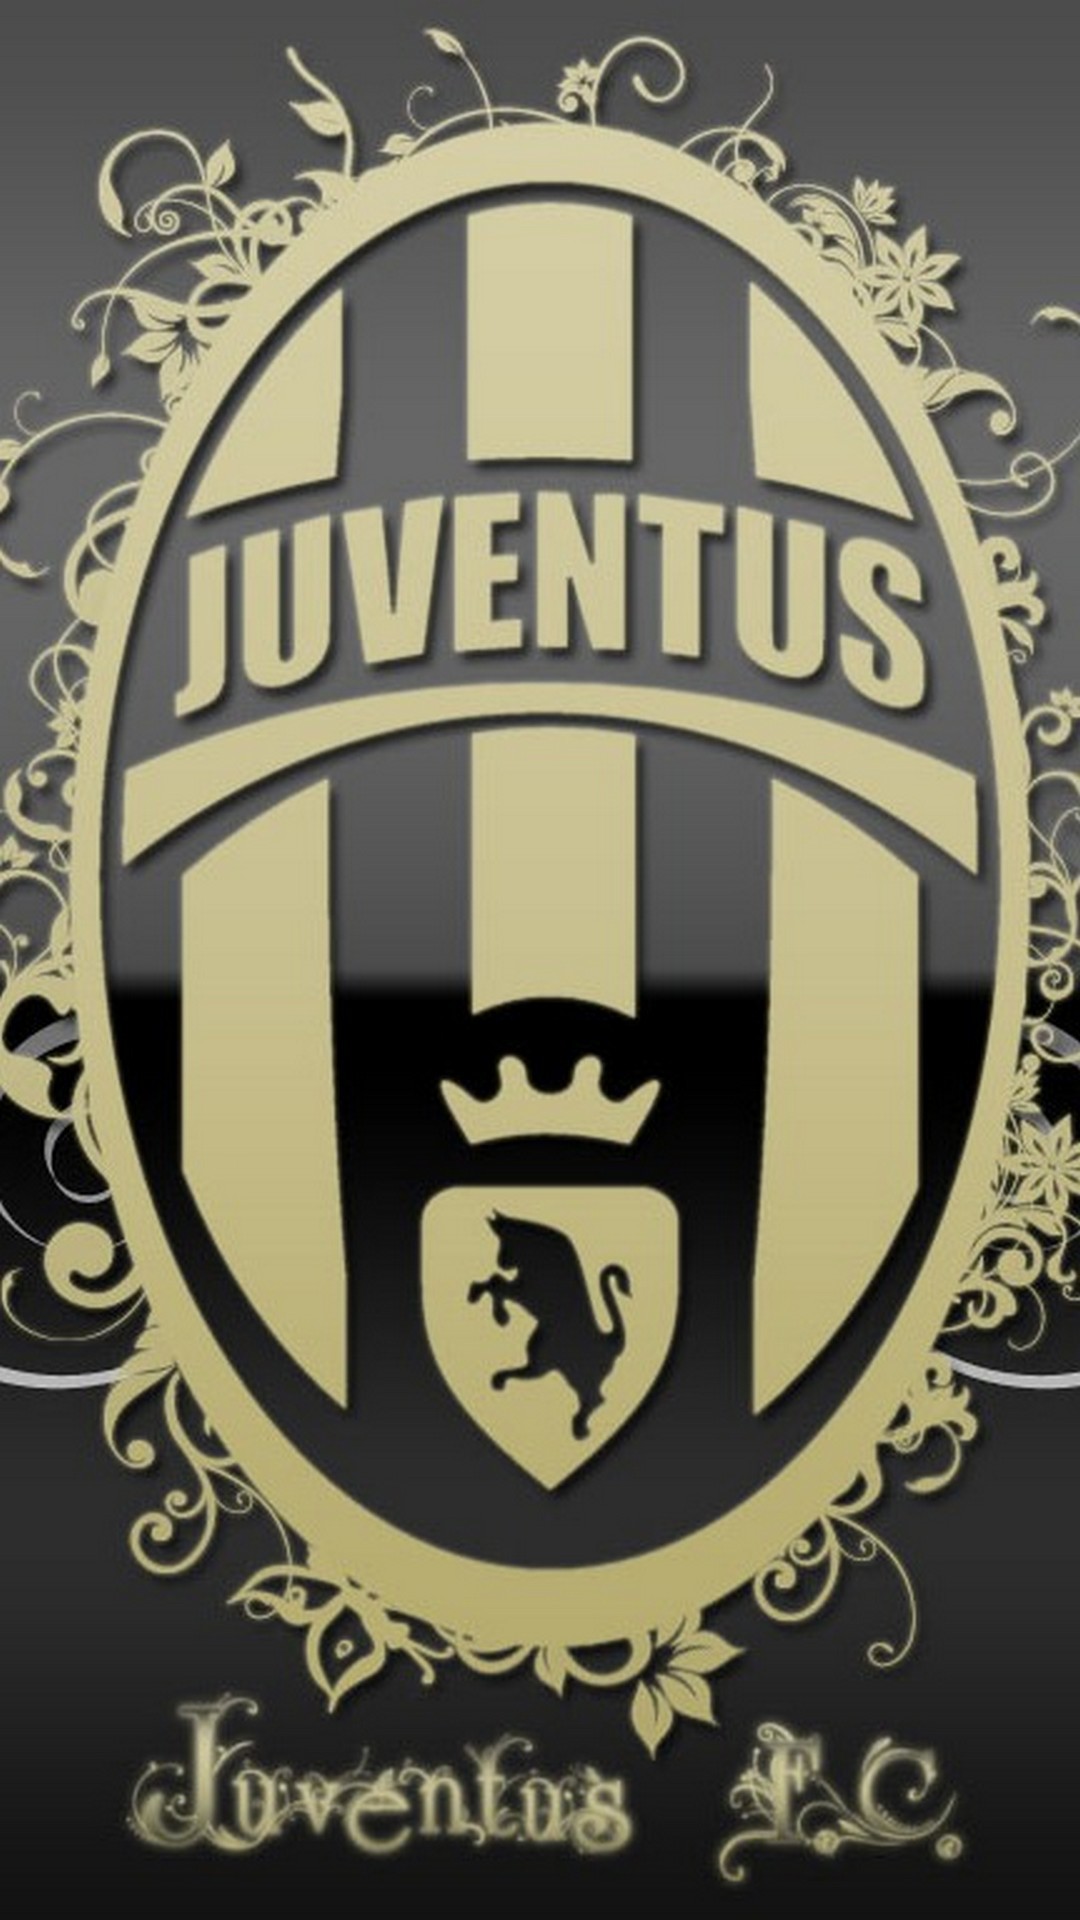 1080x1920 Juventus Logo iPhone Wallpaper Hd resolution 